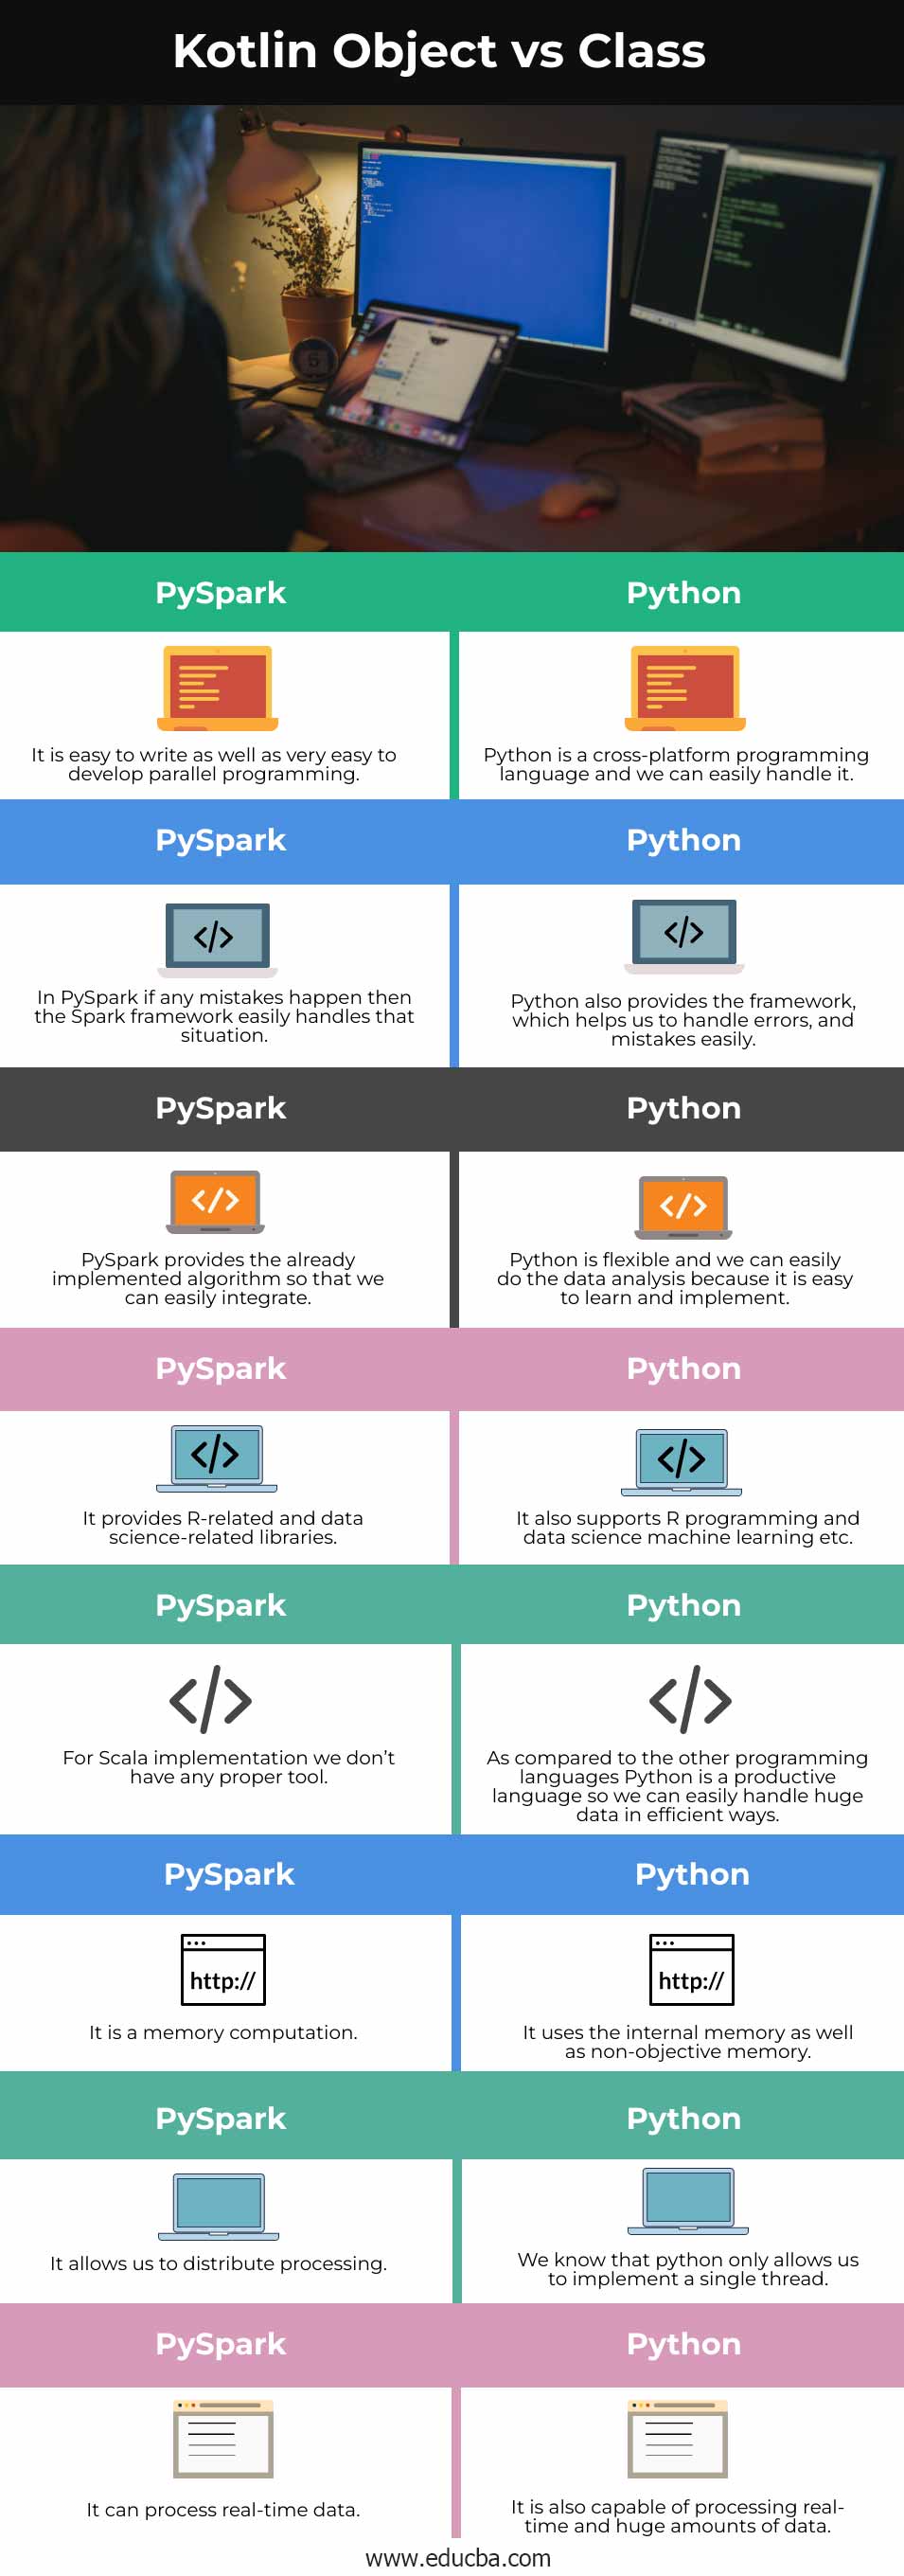 PySpark-vs-Python-info